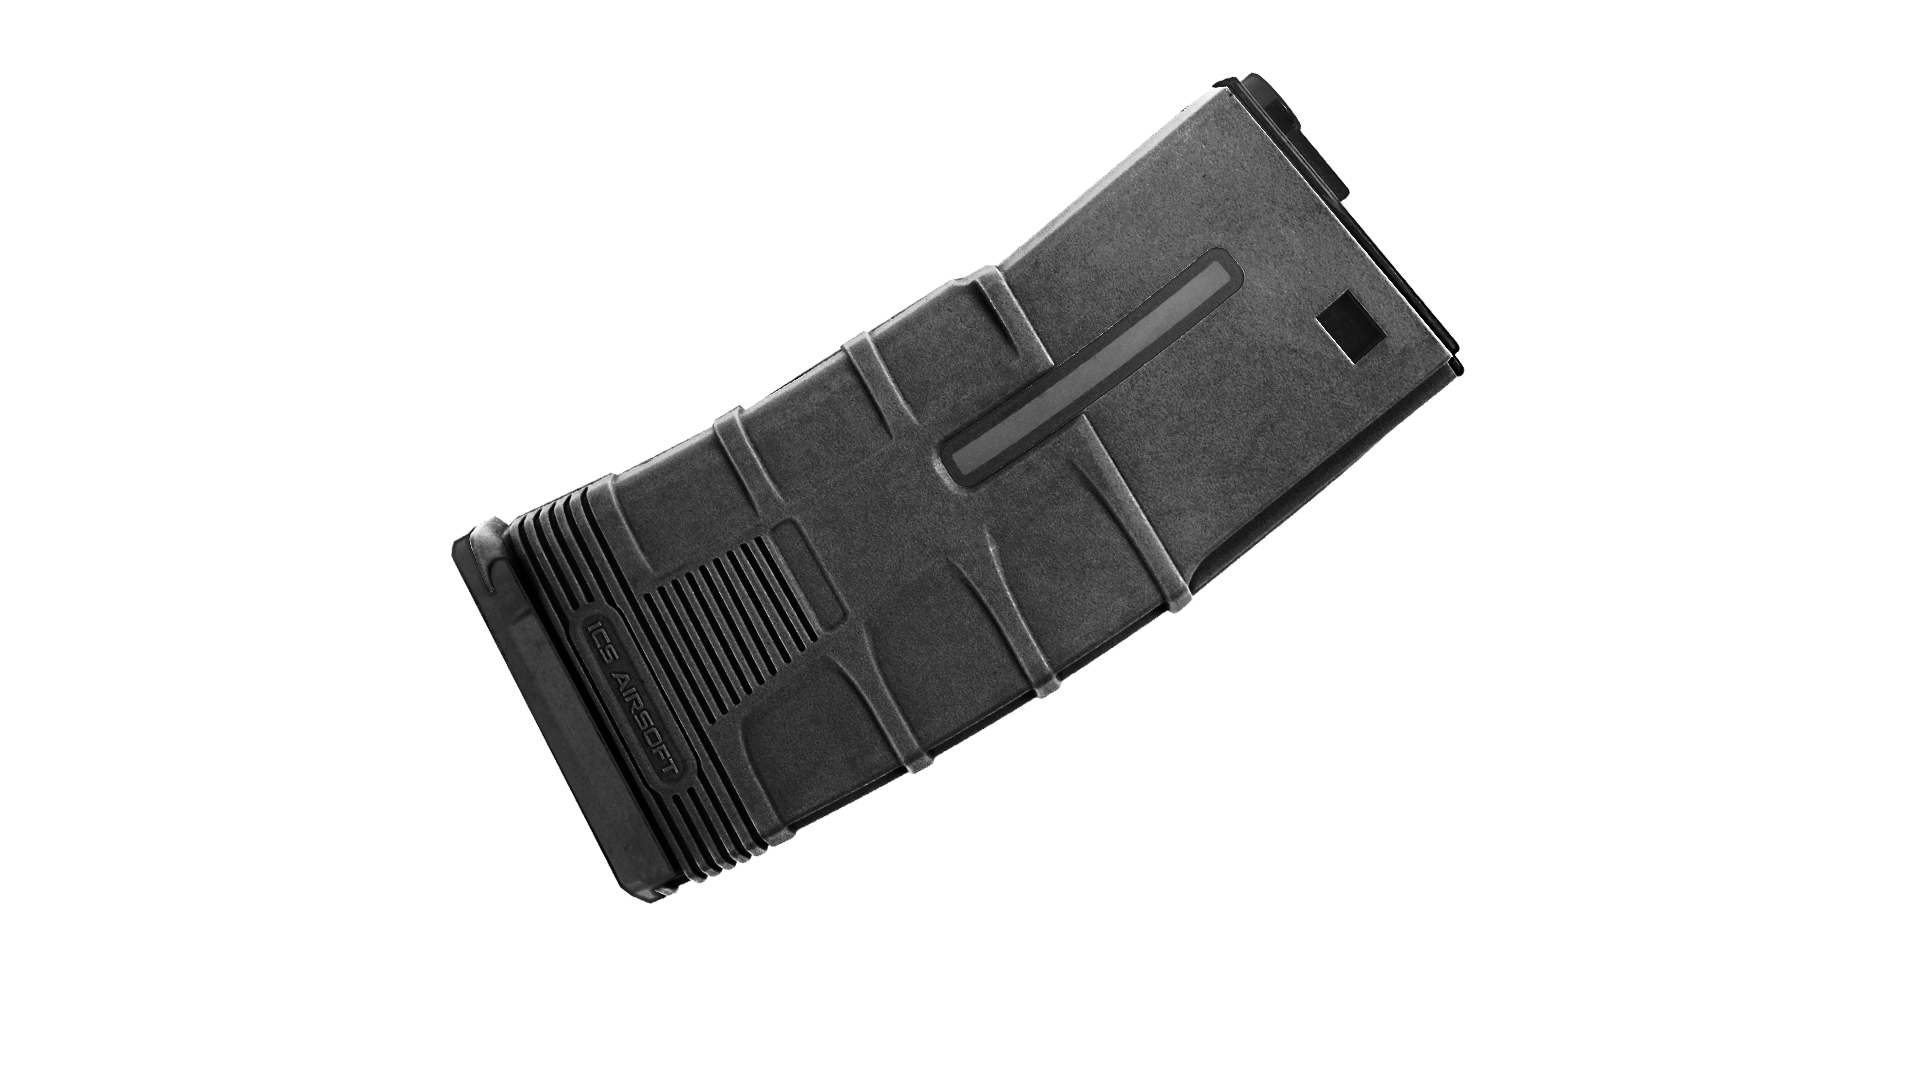 【MA-187】T戰術靜音彈匣 (45發; 1入/組) - 黑色